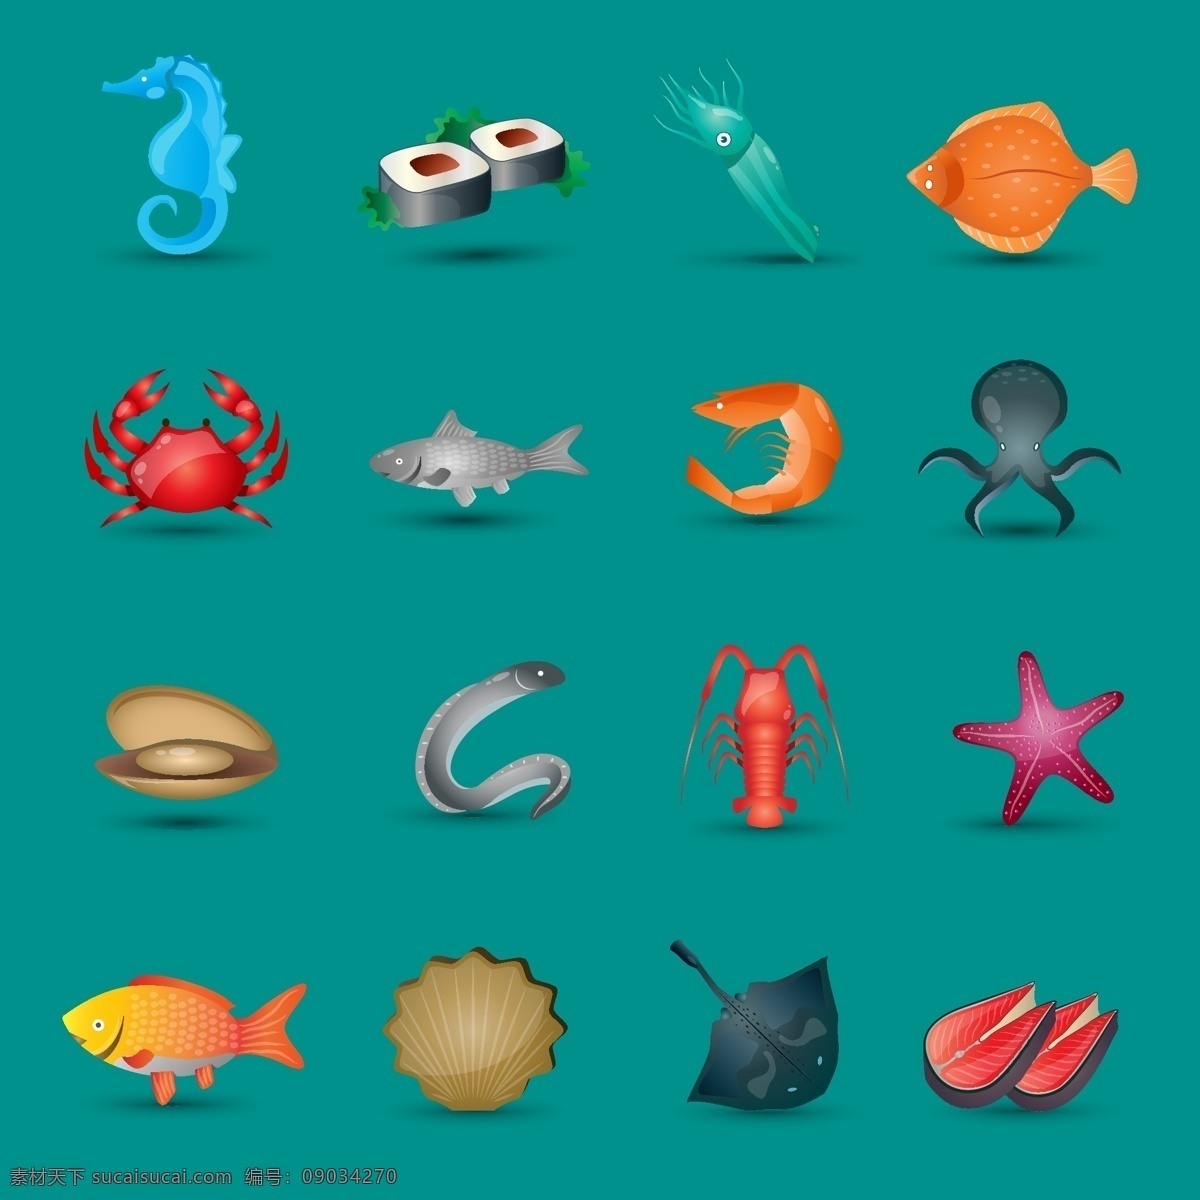 组 各种各样 海底 生物 元素 设计素材 创意设计 动物 小动物 卡通 可爱 矢量素材 海底生物